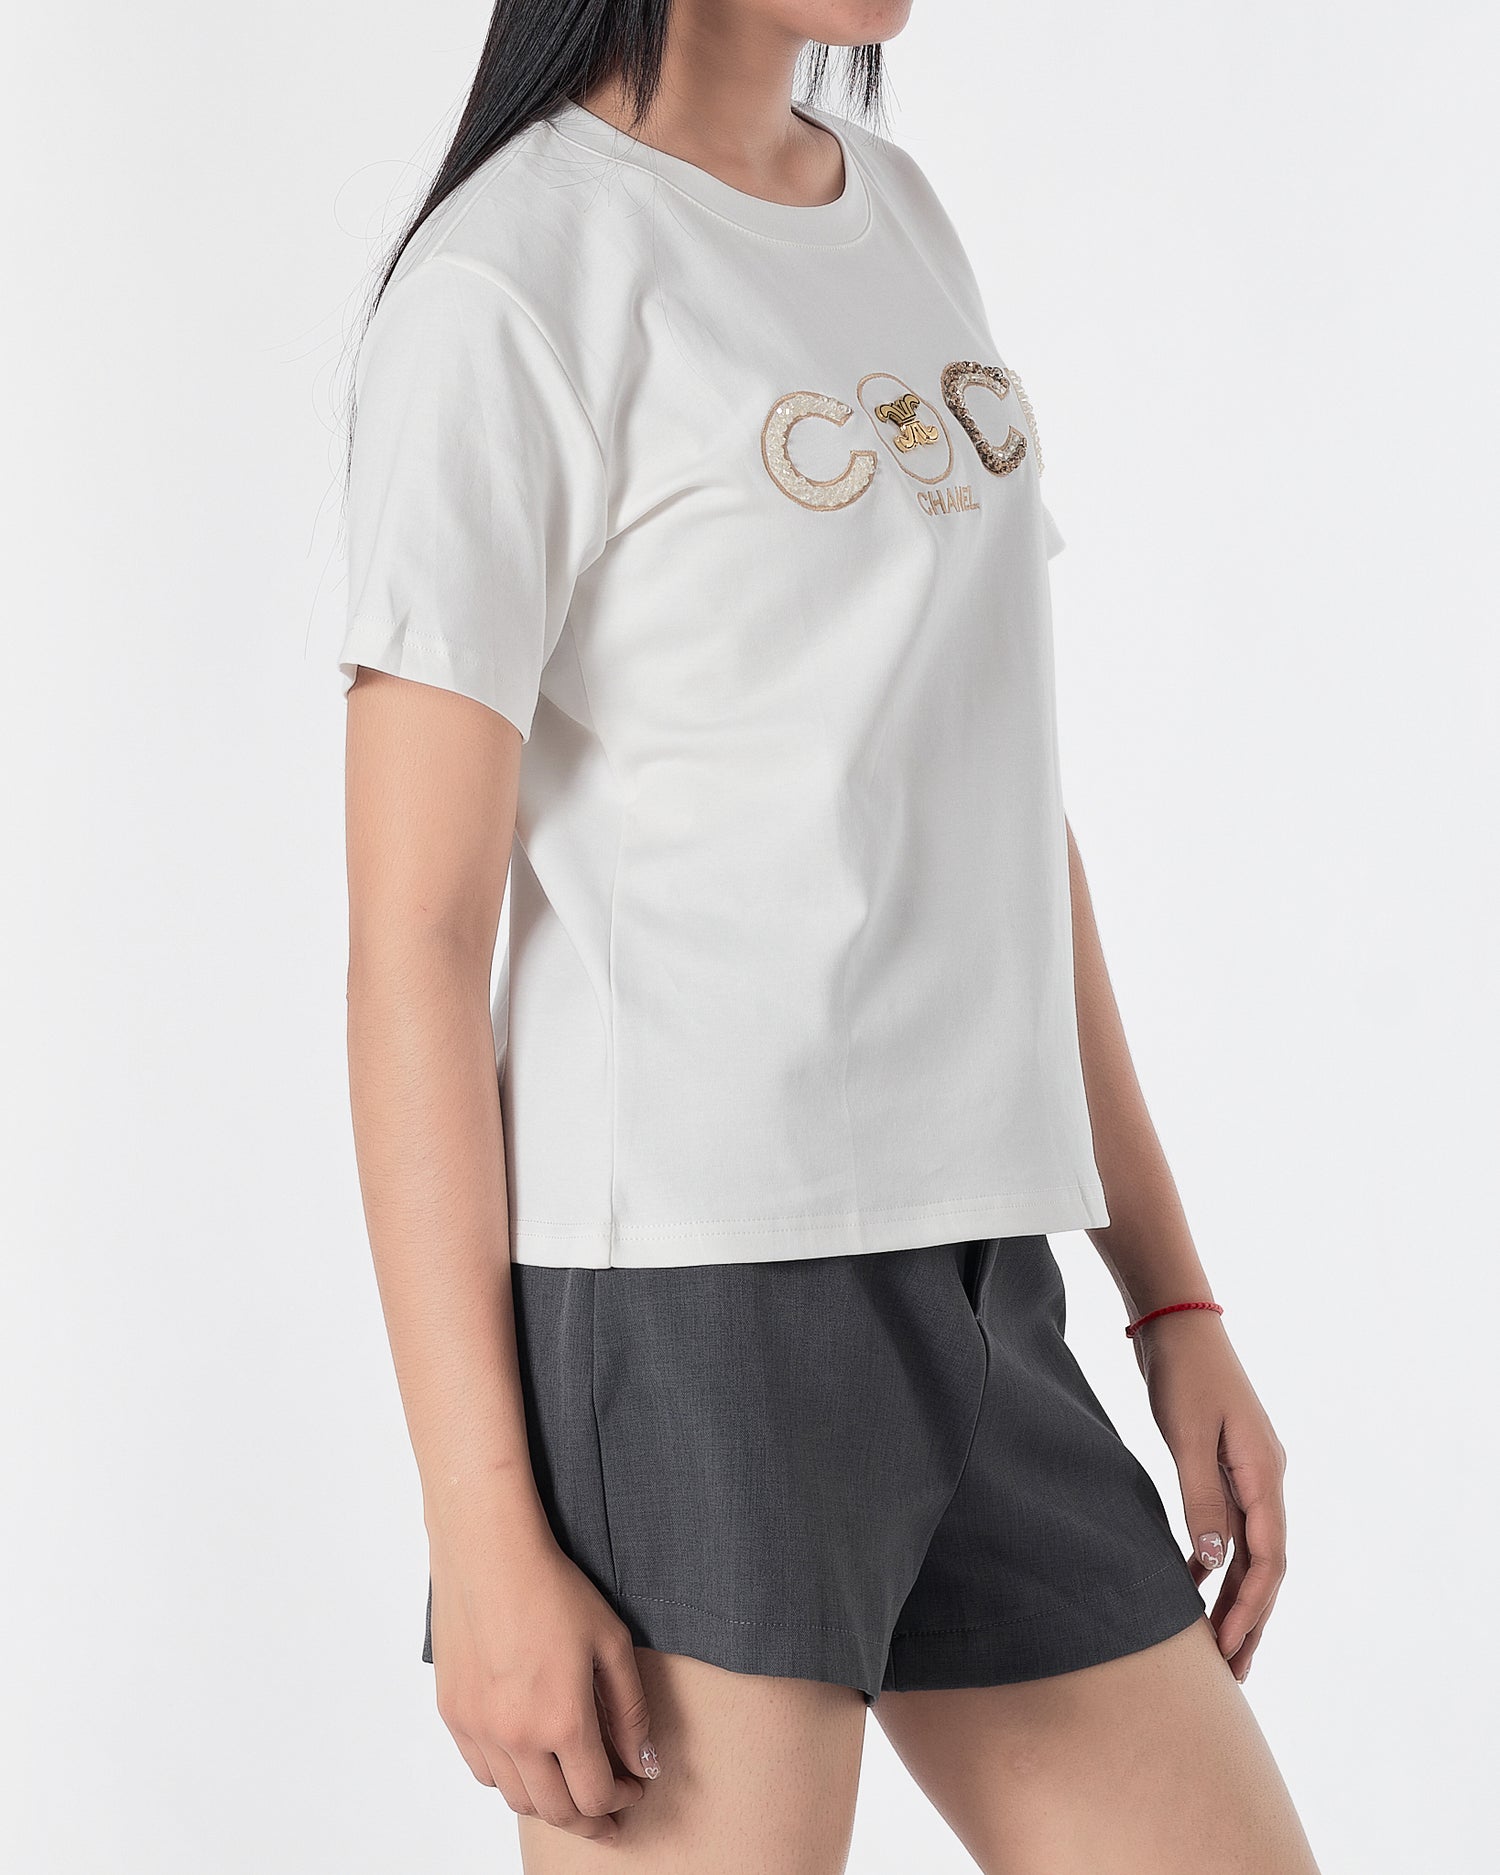 CHA COCO Rhinestone Lady White T-Shirt 29.90